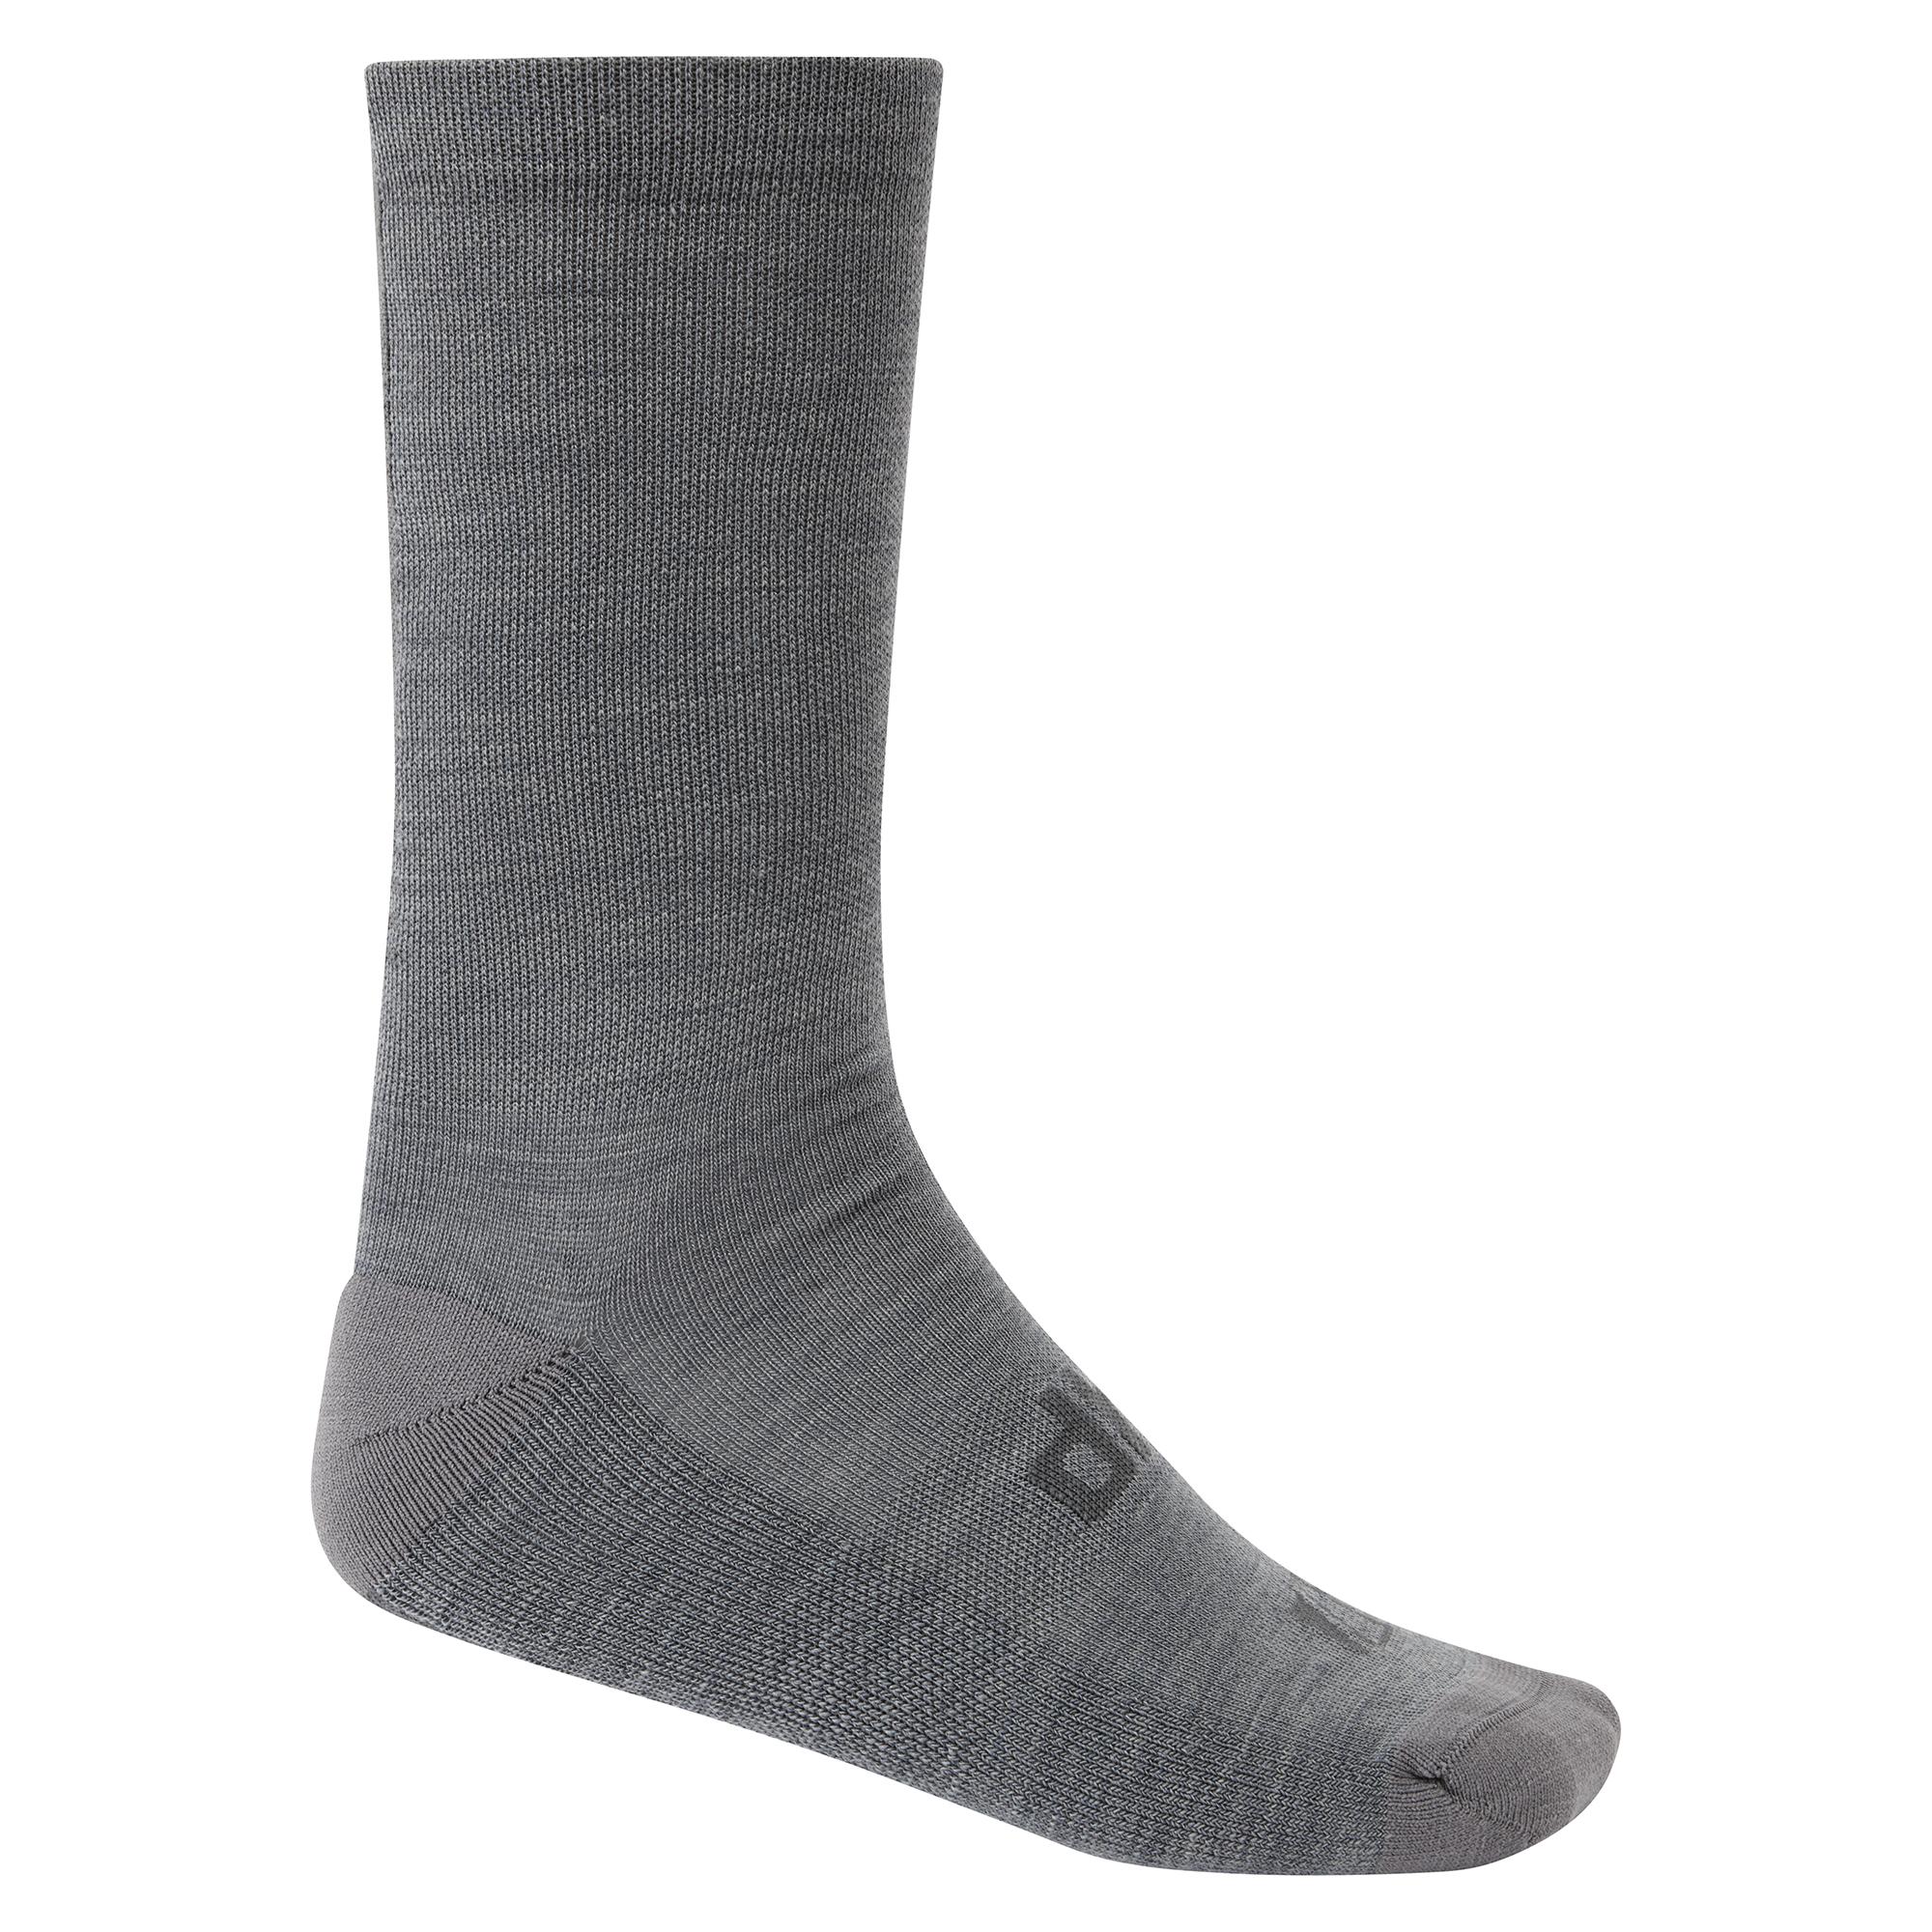 Dhb Aeron Merino Sock 2.0 - Medium Grey